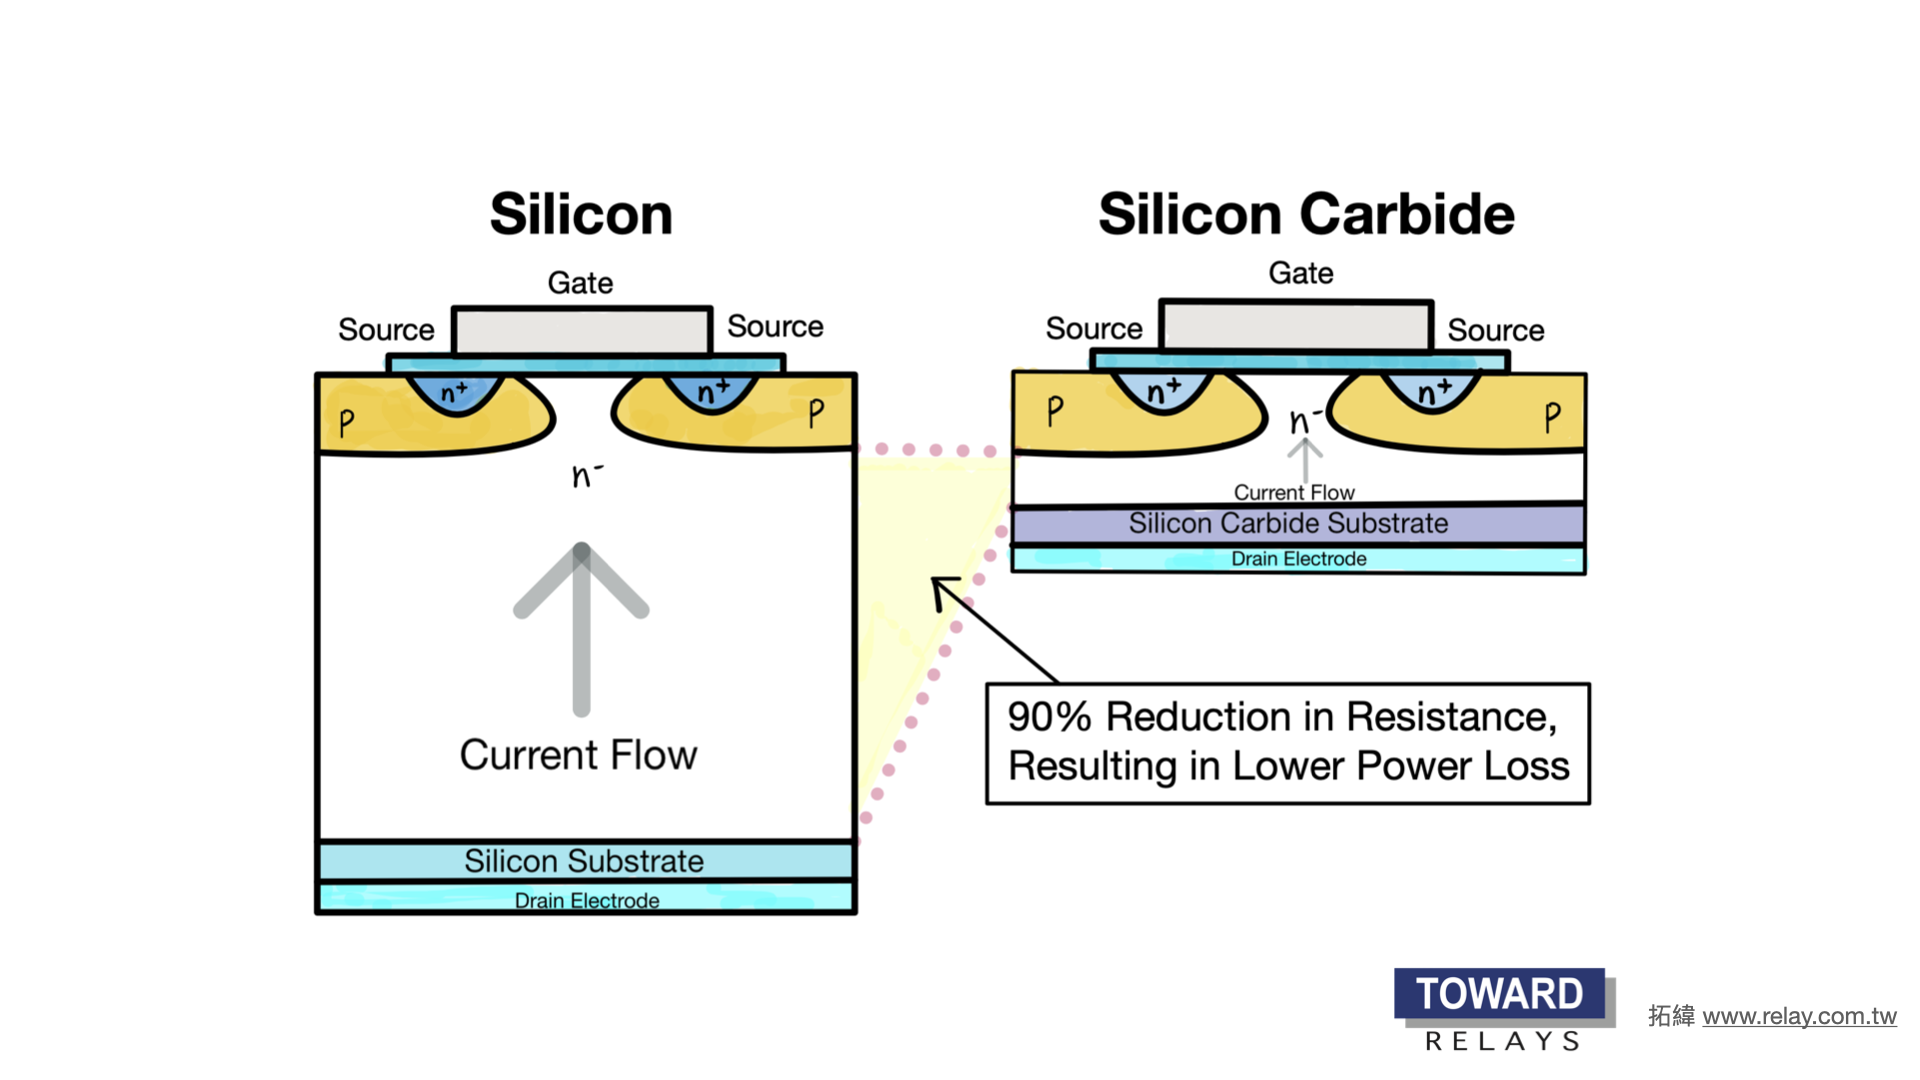 SiC è un semiconduttore a banda larga che può sopportare migliaia di tensione e alte temperature (oltre i 175°C). I componenti SiC possono funzionare efficientemente a frequenze più elevate senza perdite inutili come IGBT e MOSFET a base di silicio. Il SiC ha anche una resistenza di stato inferiore a tensioni più elevate.